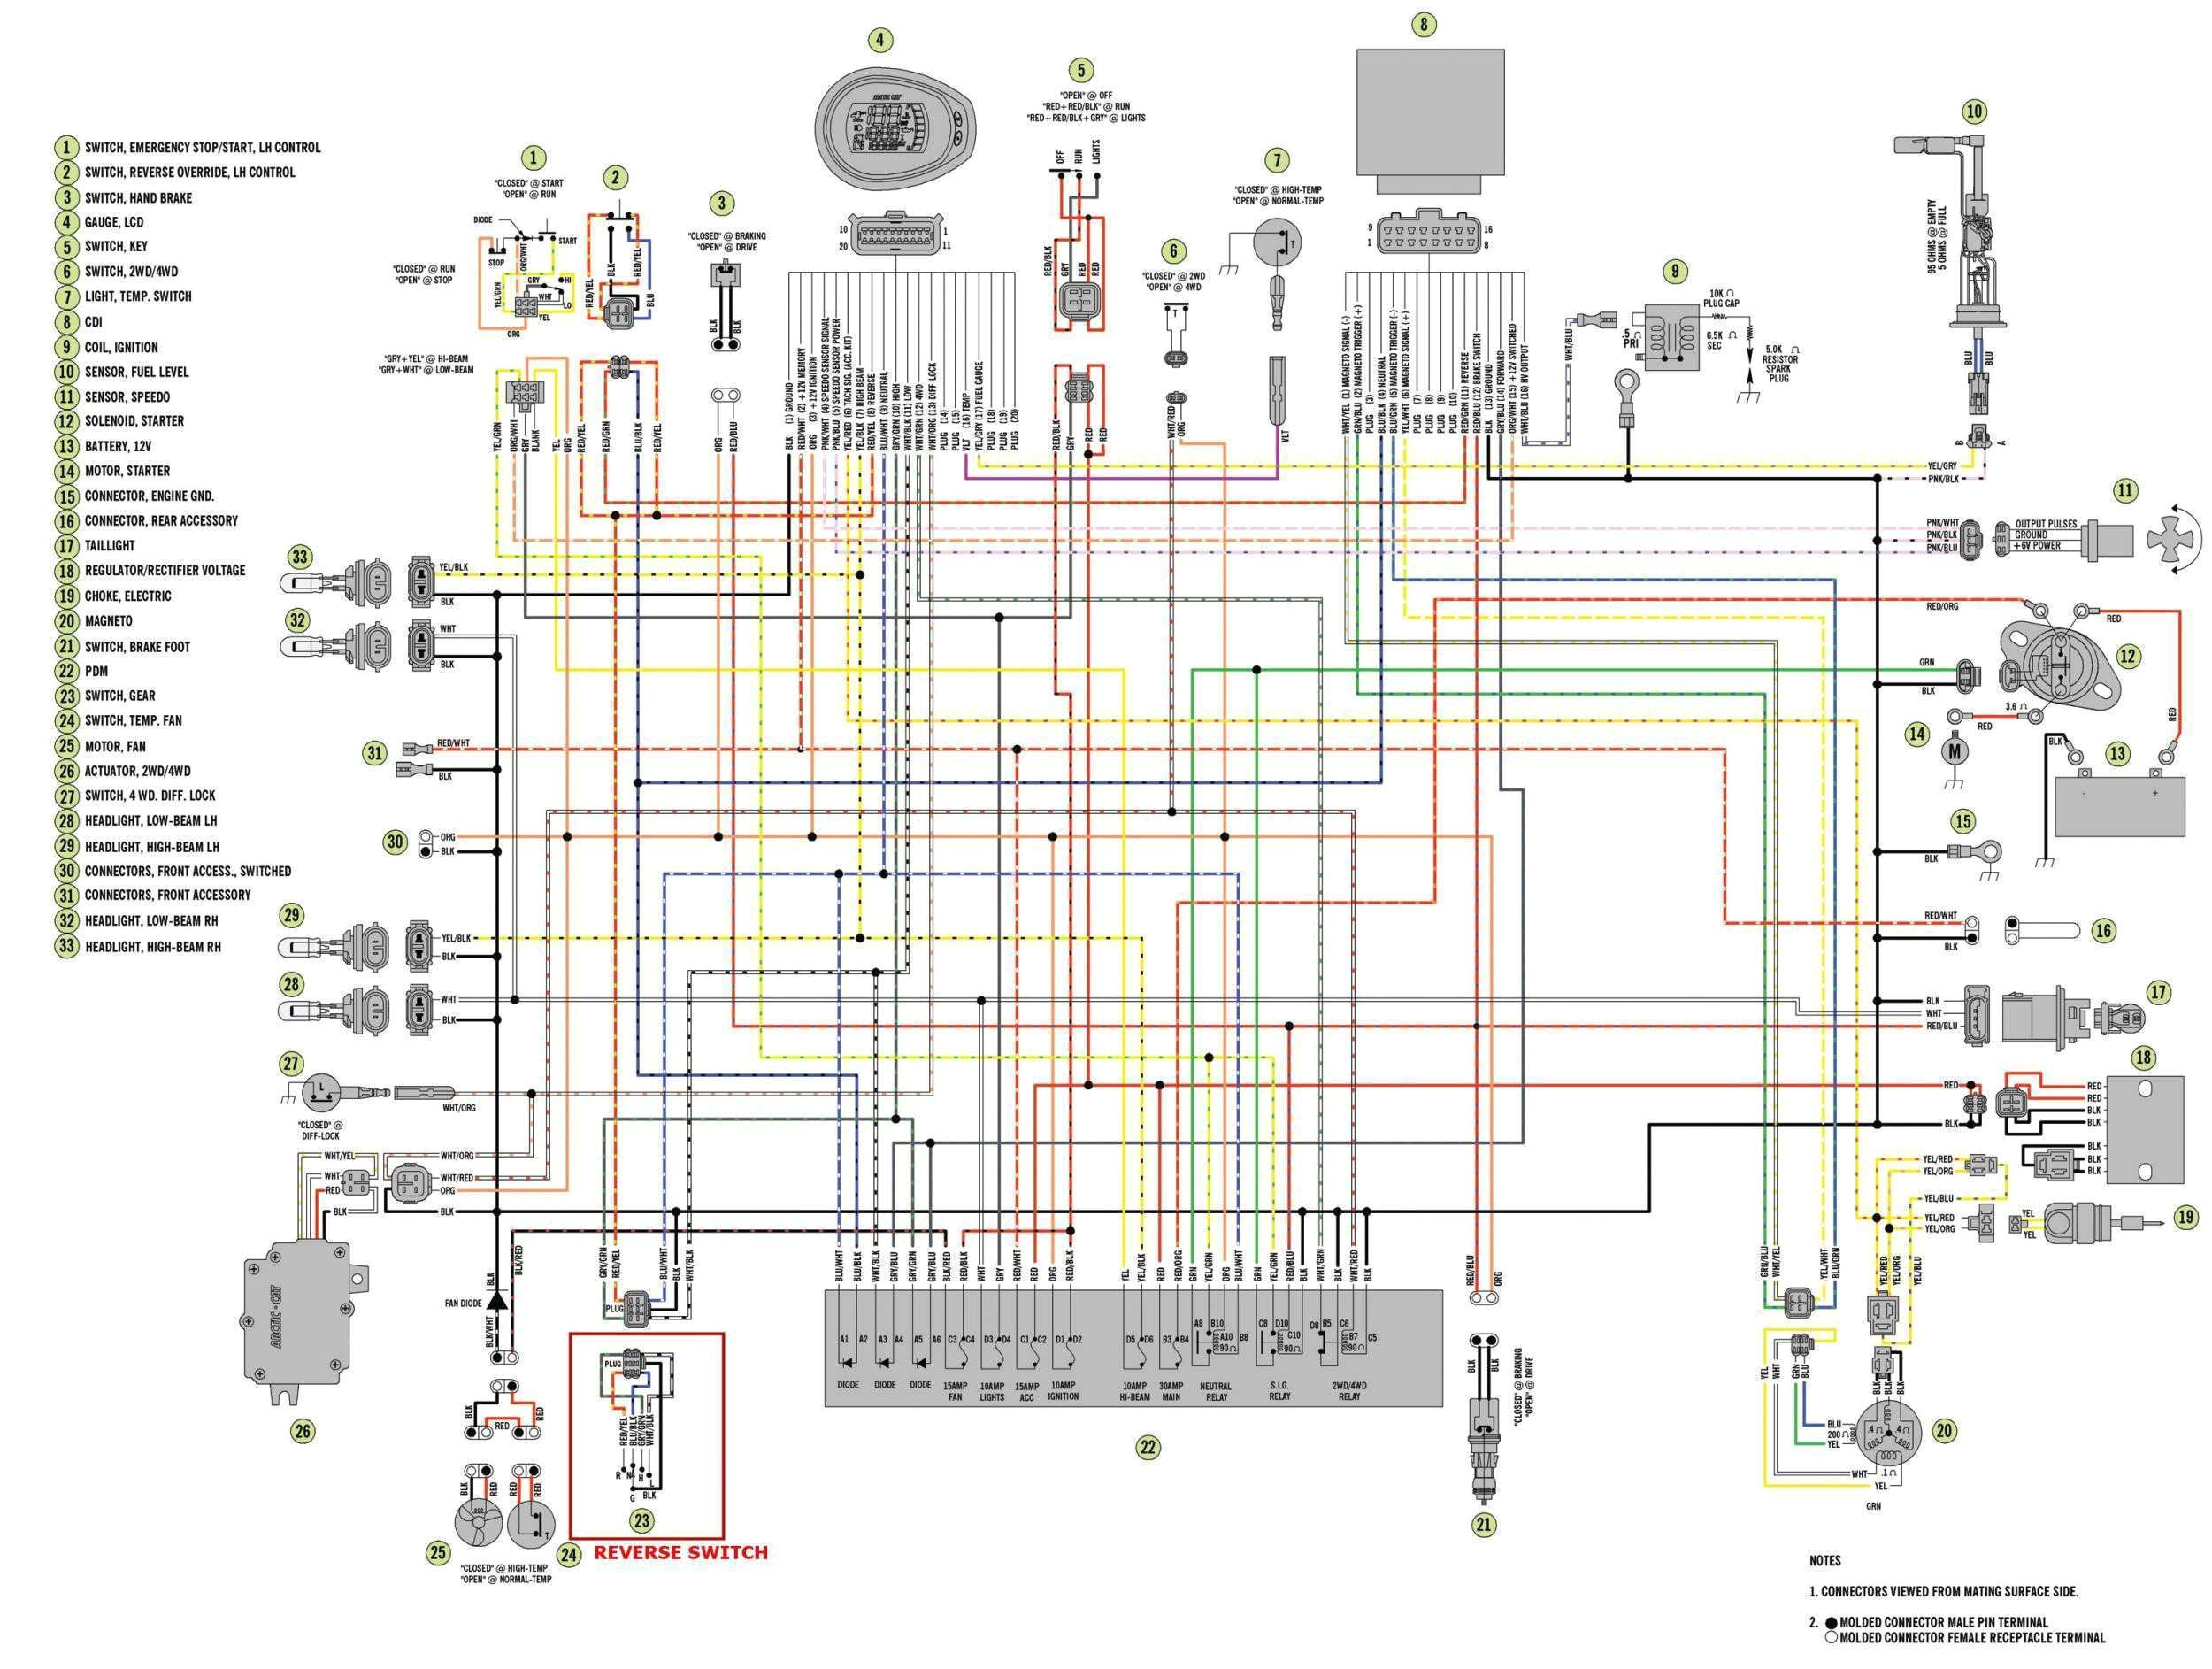 wiring diagram of polaris ranger home wiring diagram wiring diagram polaris sportsman 400 2011 polaris ranger